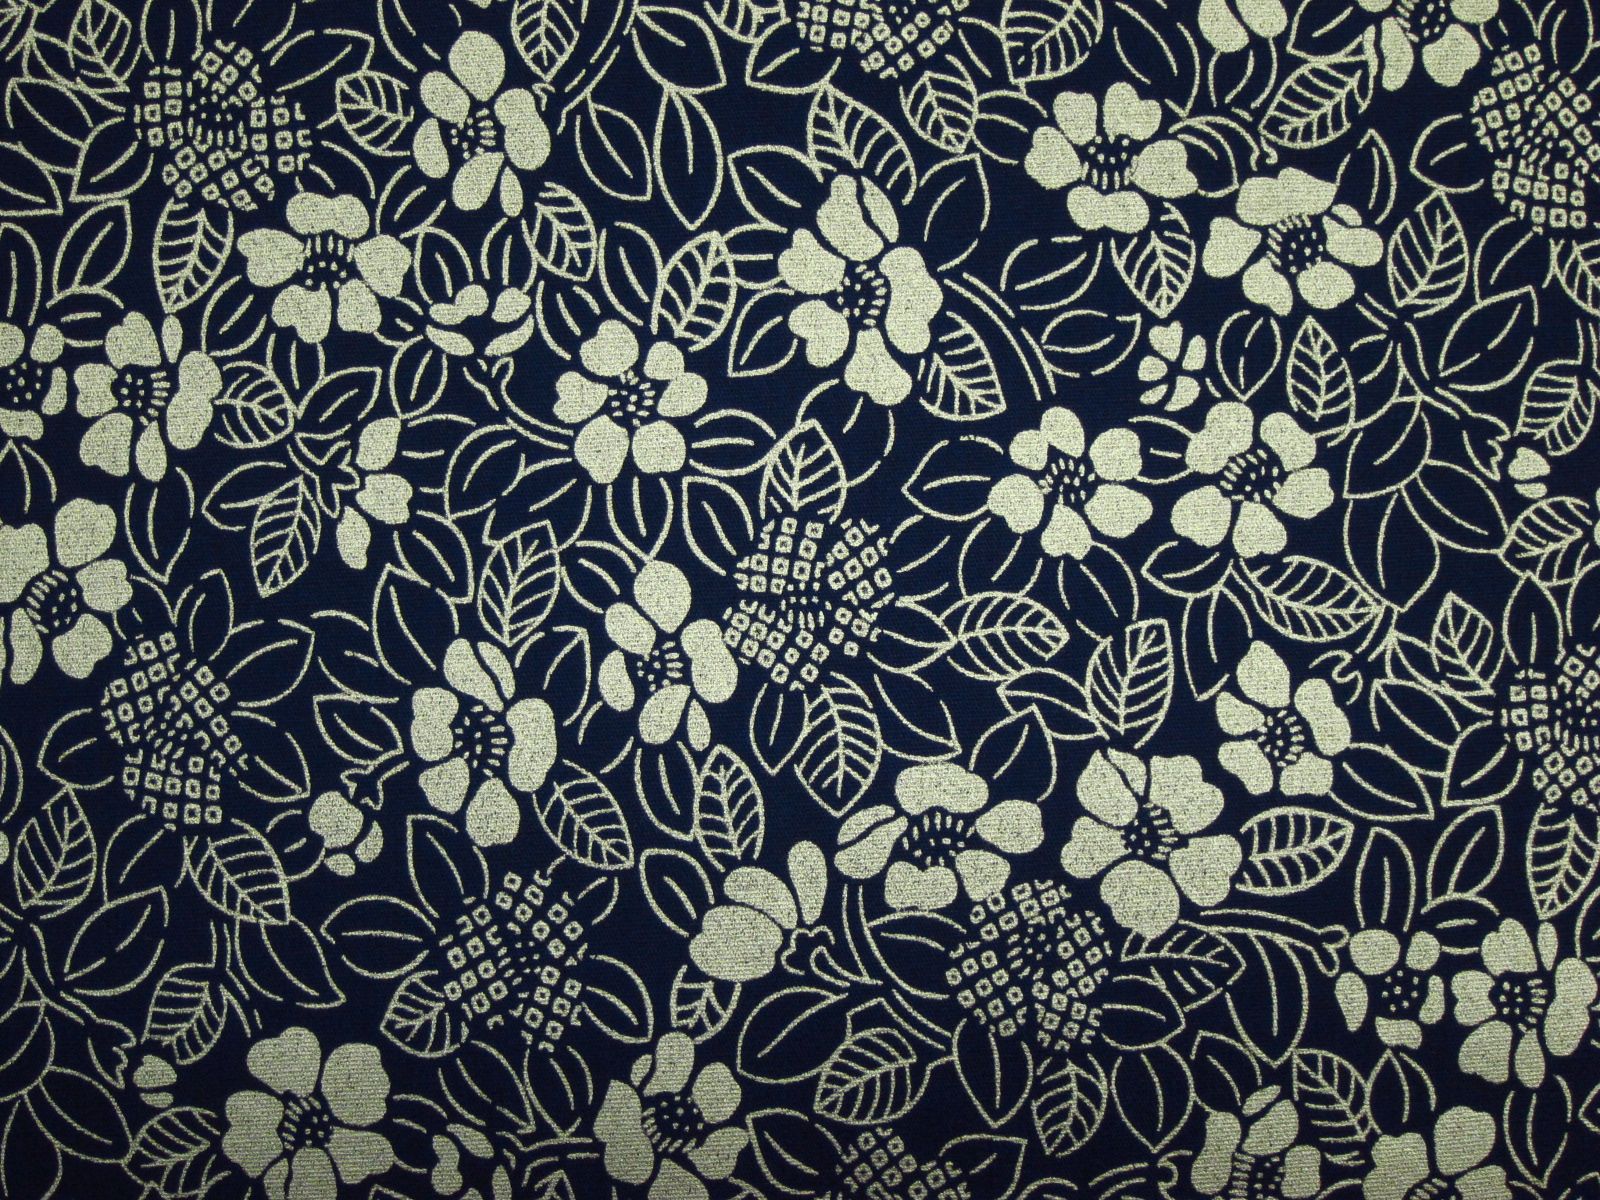 台灣製平織綿布-金蔥椿花群-深藍底-100%純綿、台灣製造